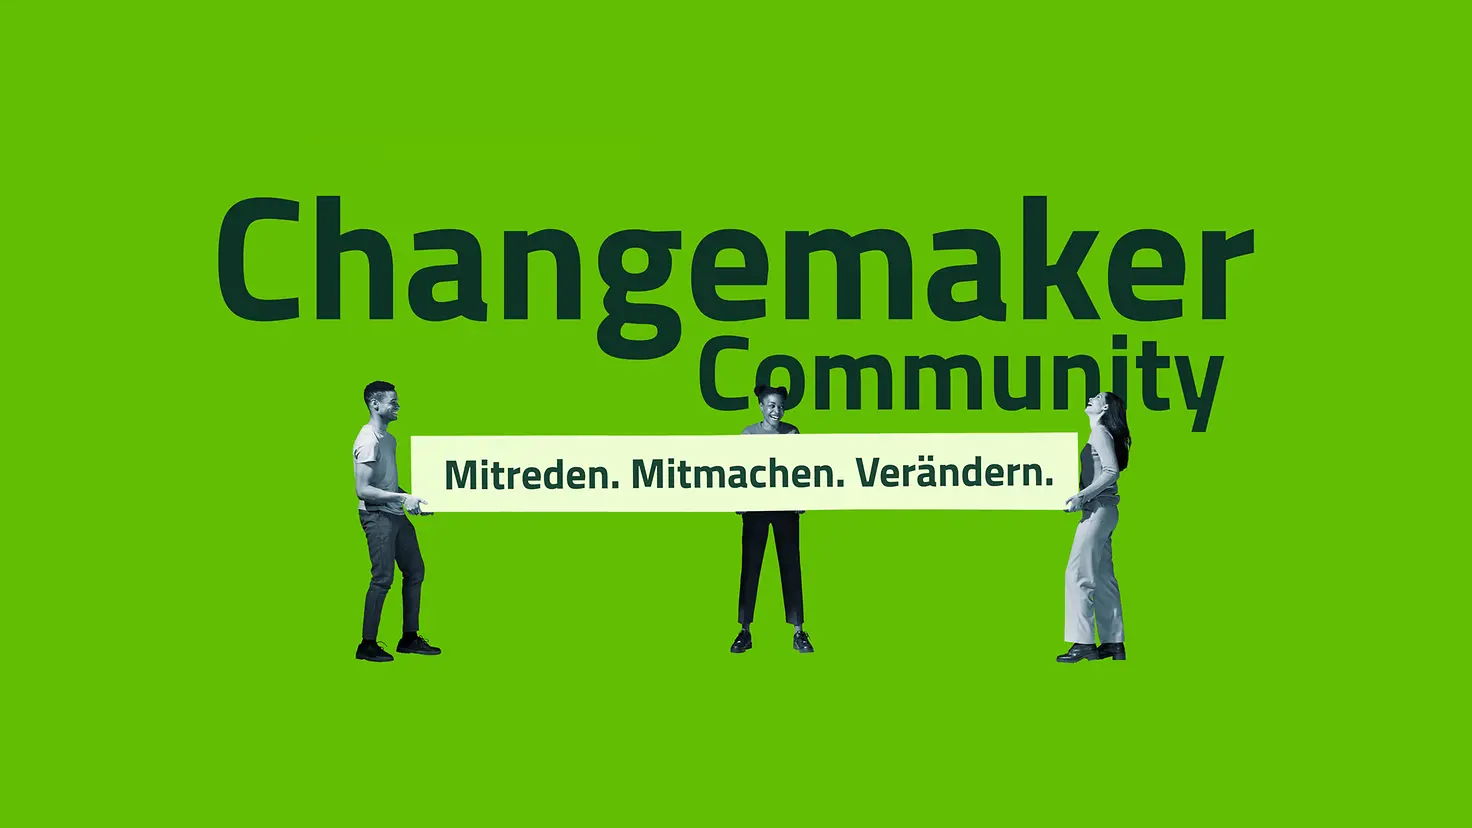 Grüne Collage der Changemaker Community: Mitreden. Mitmachen. Verändern.